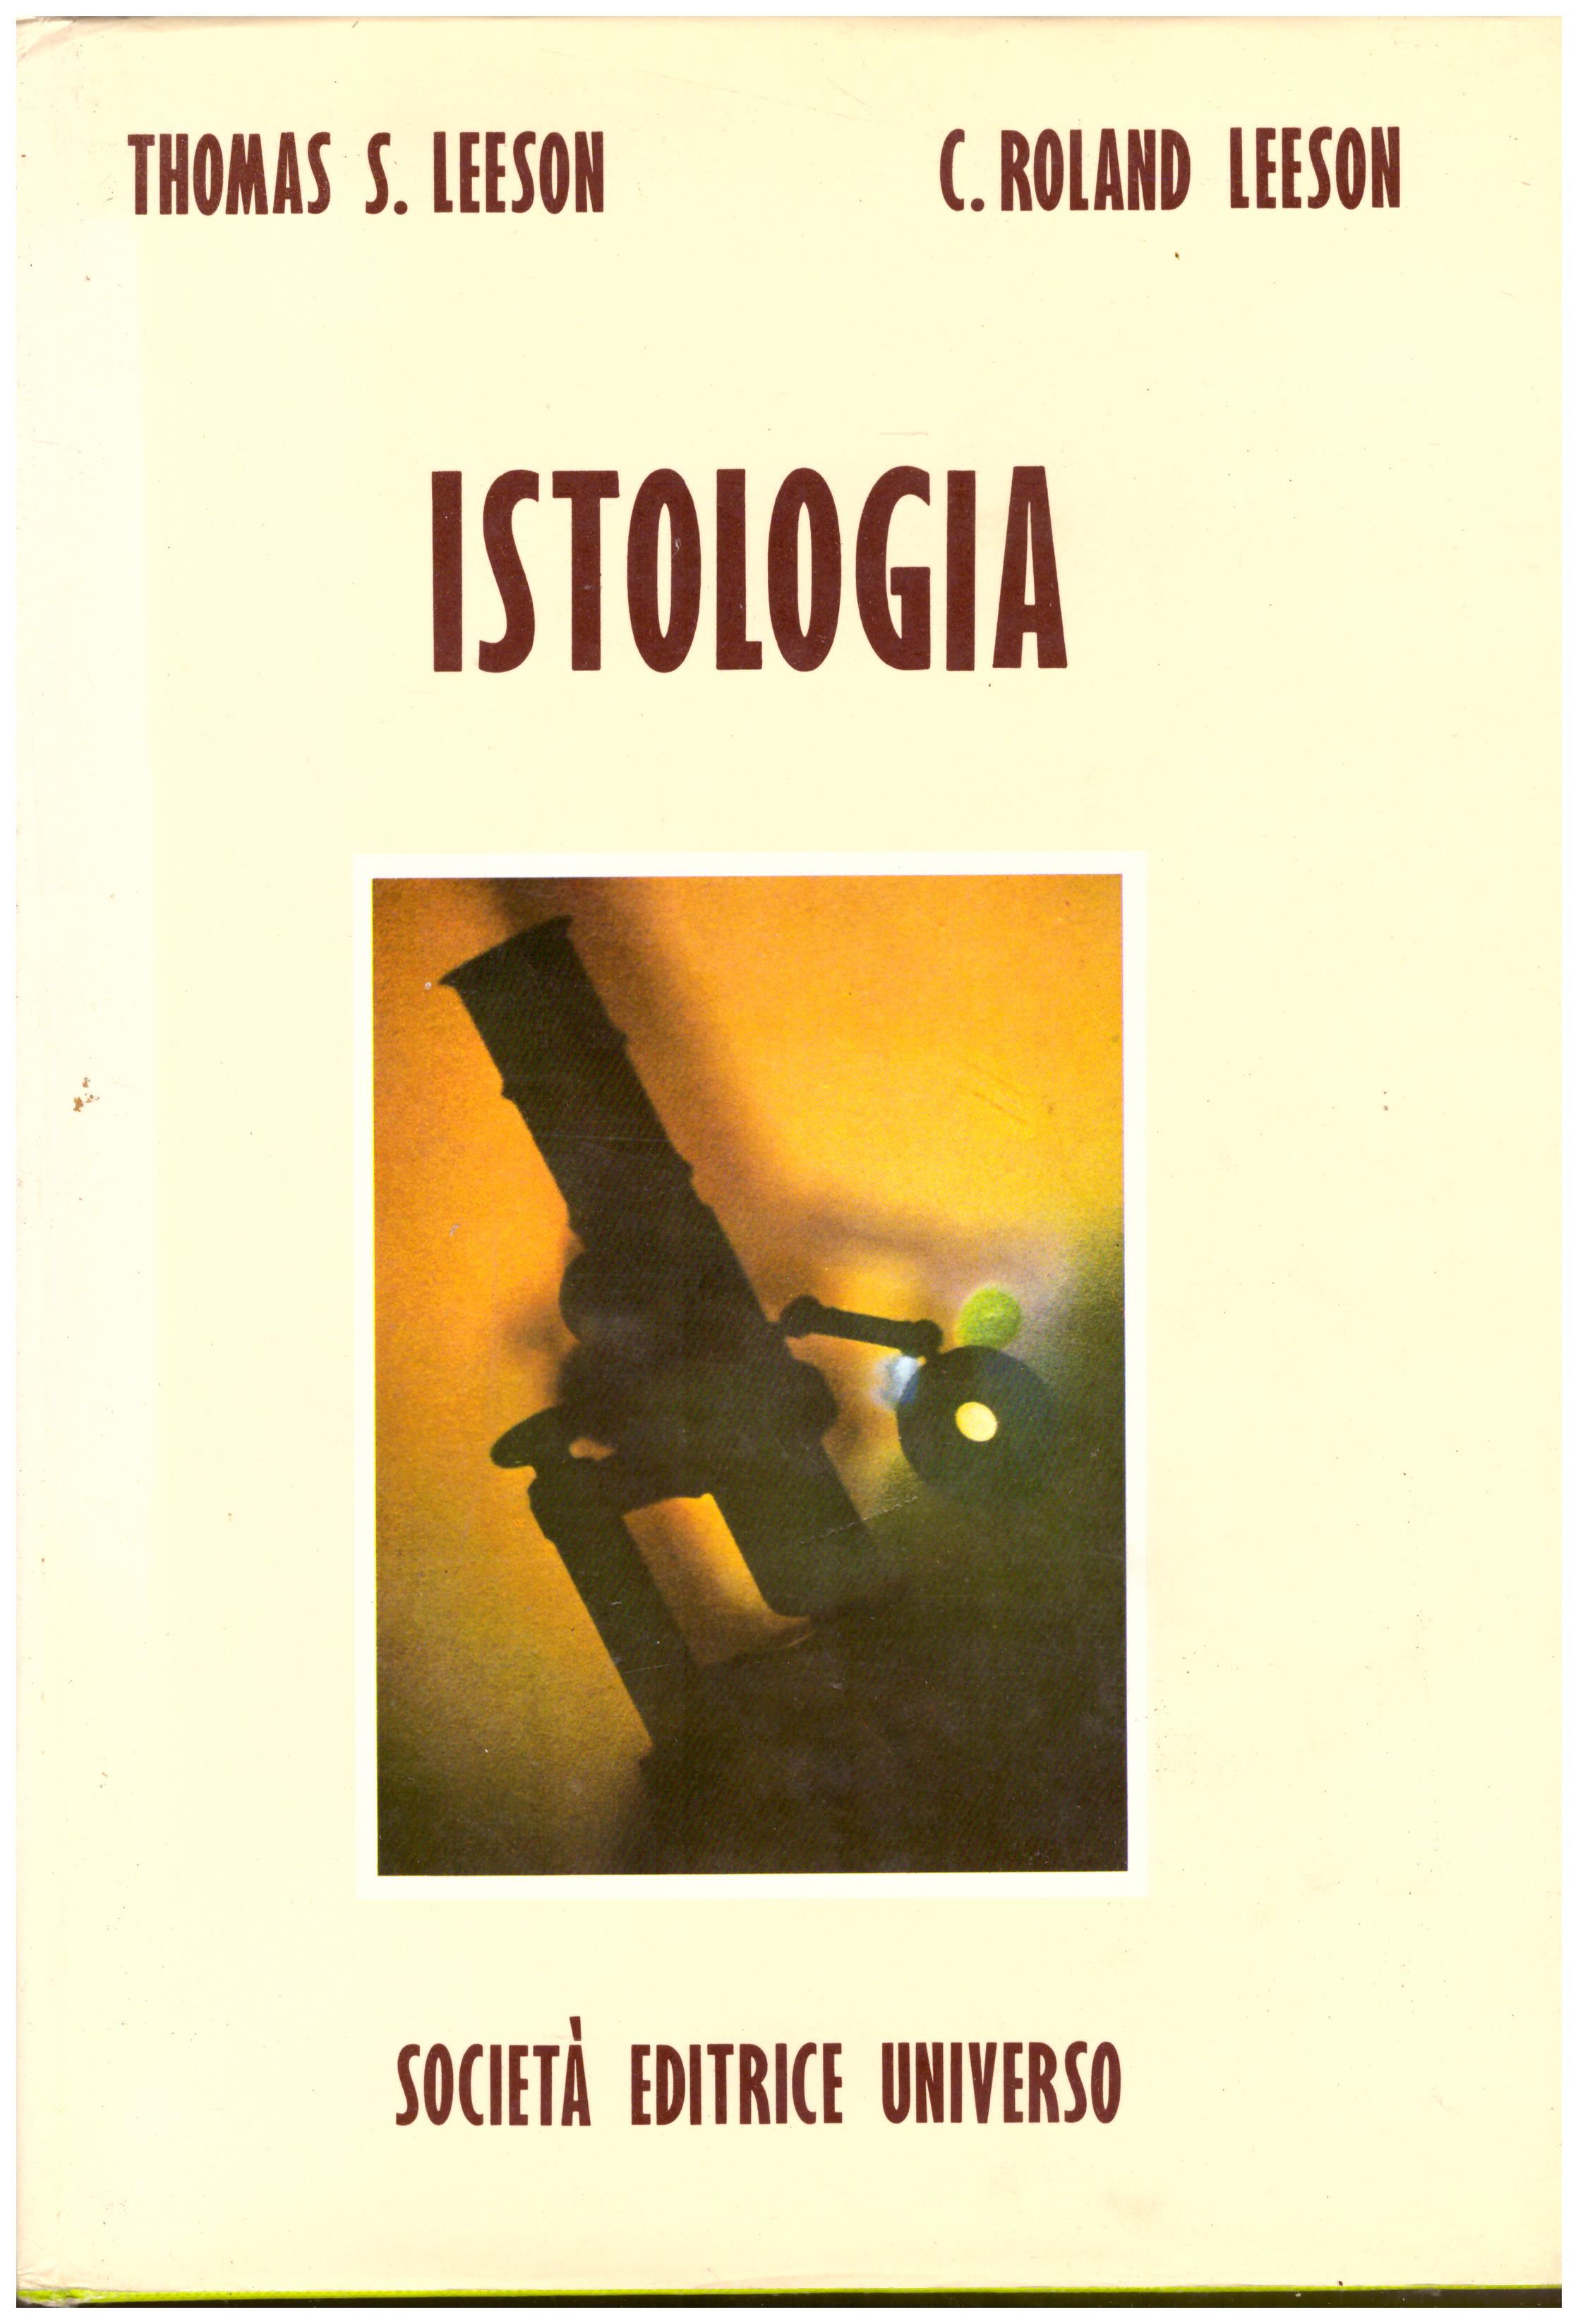 Titolo: Istologia Autore: Thomas S. Leeson, C. Rolad Leeson Editore: società editrice universo, 1974